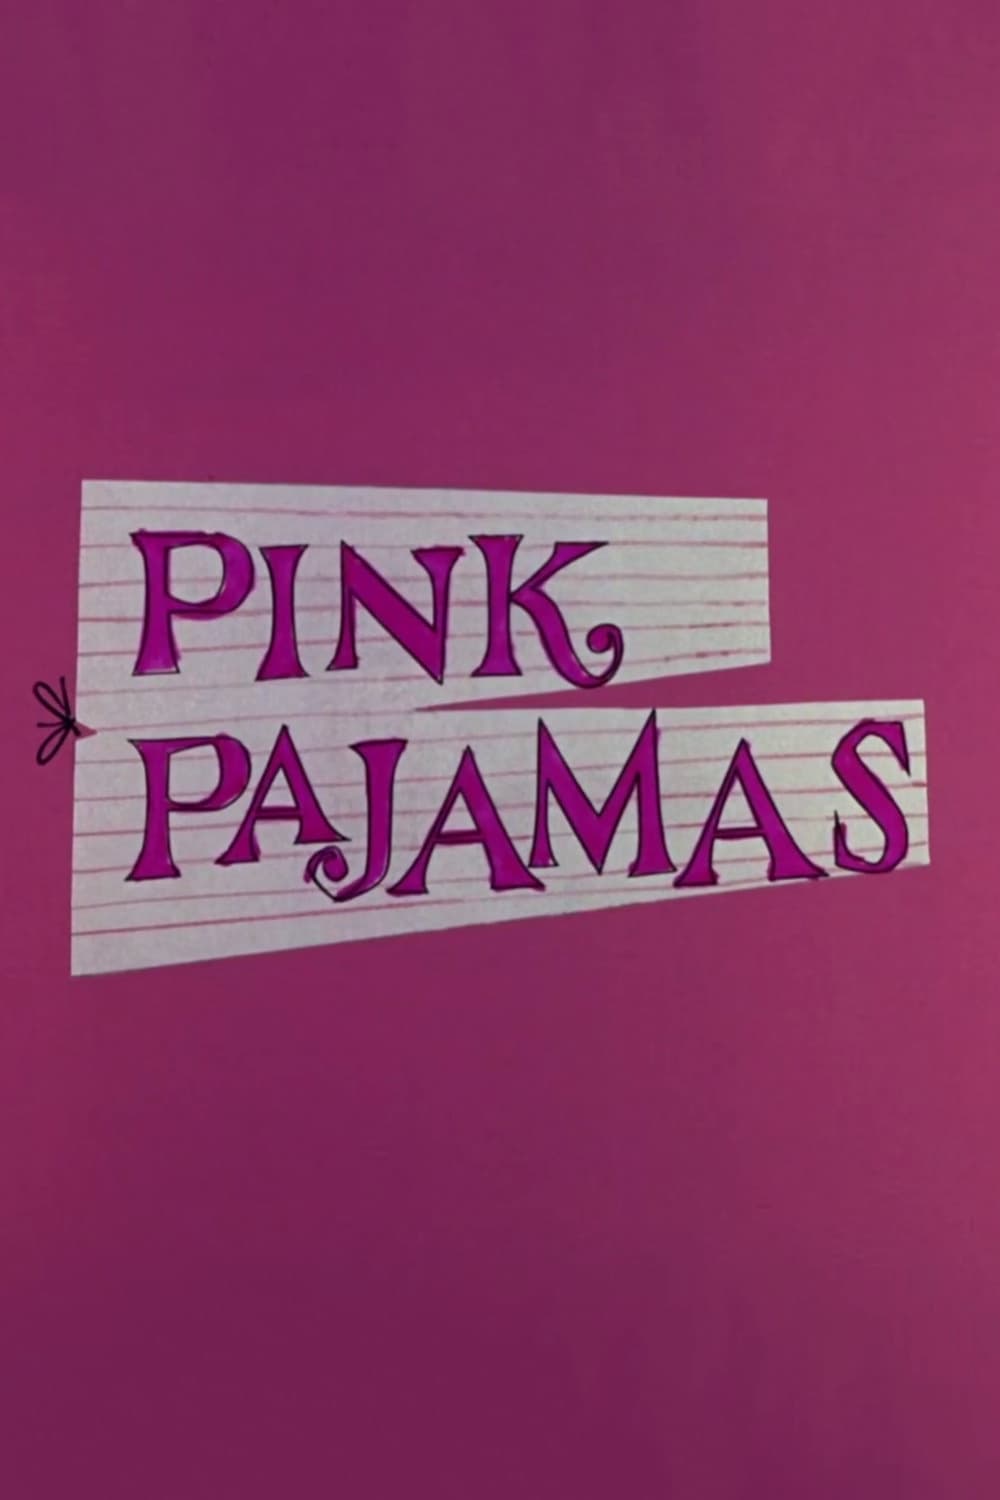 Pink Pajamas (1964)